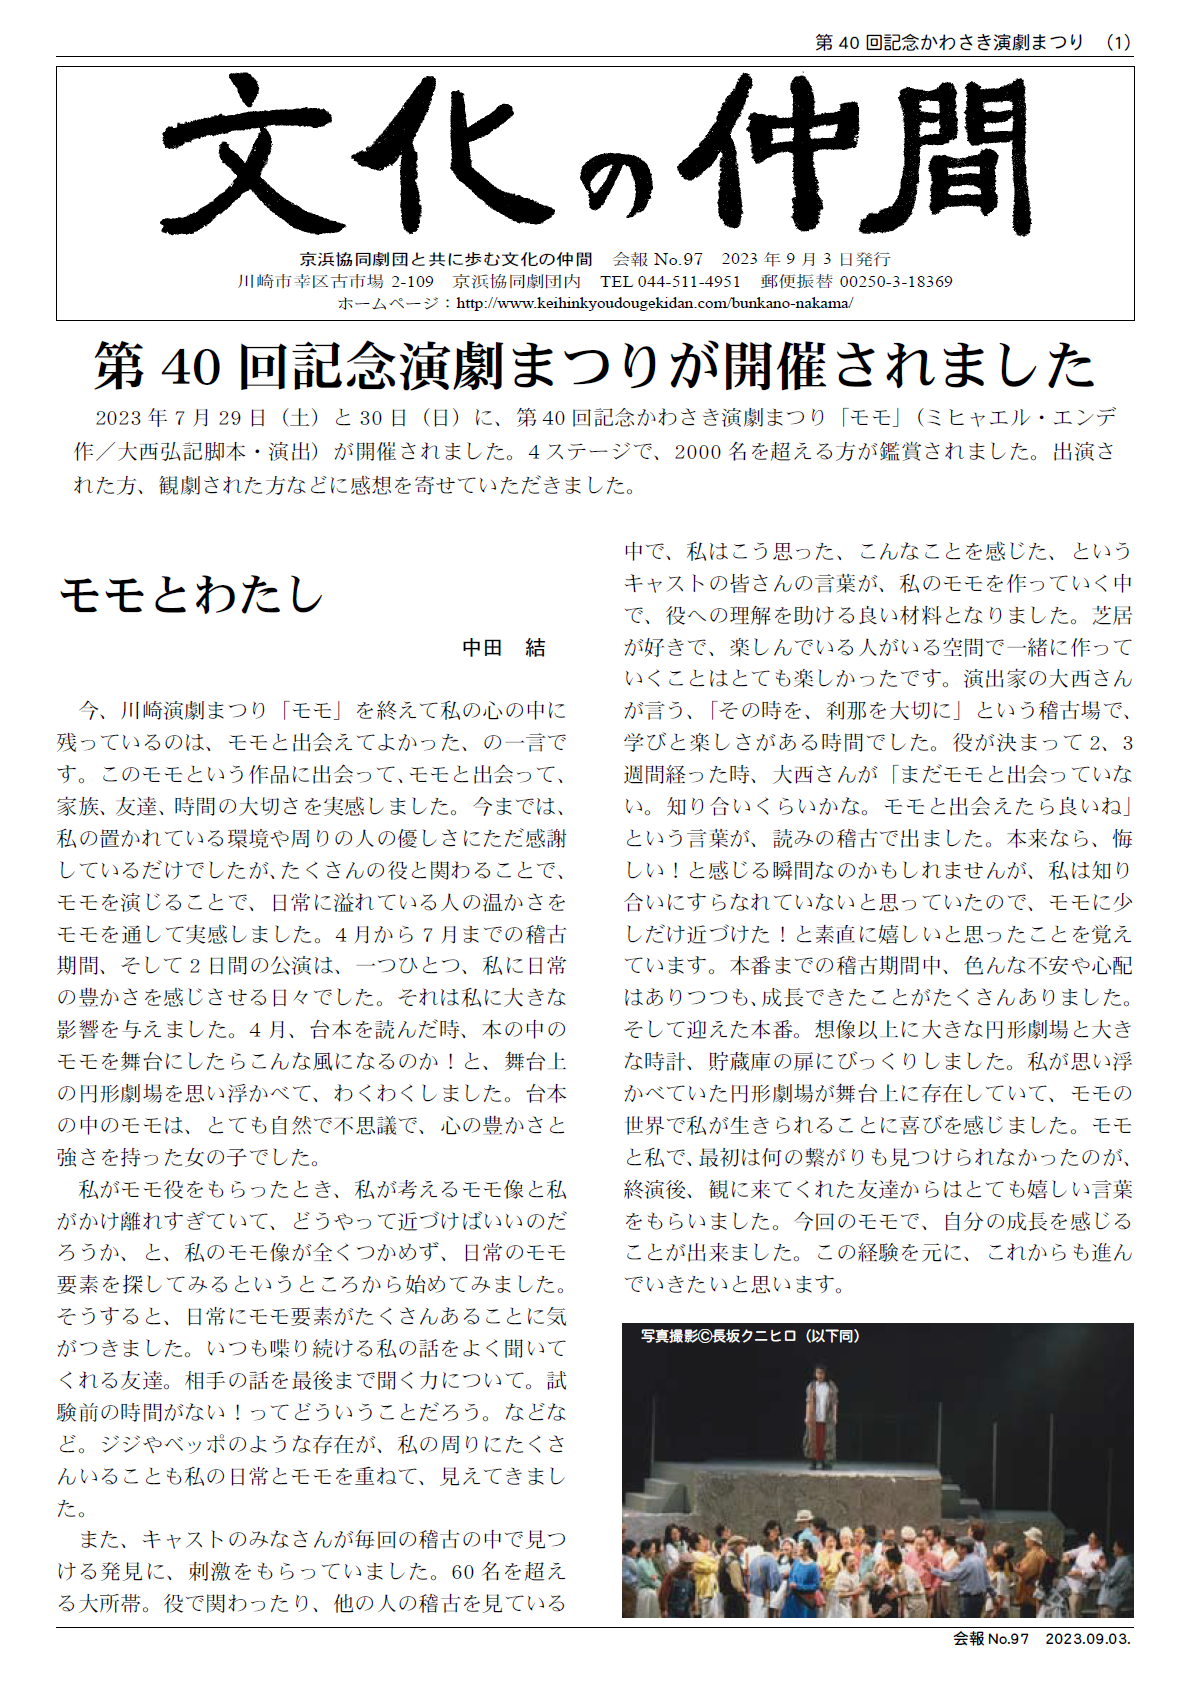 京浜協同劇団と共に歩む文化の仲間　会報No.97　2023年9月3日発行  第40 回記念演劇まつりが開催されました